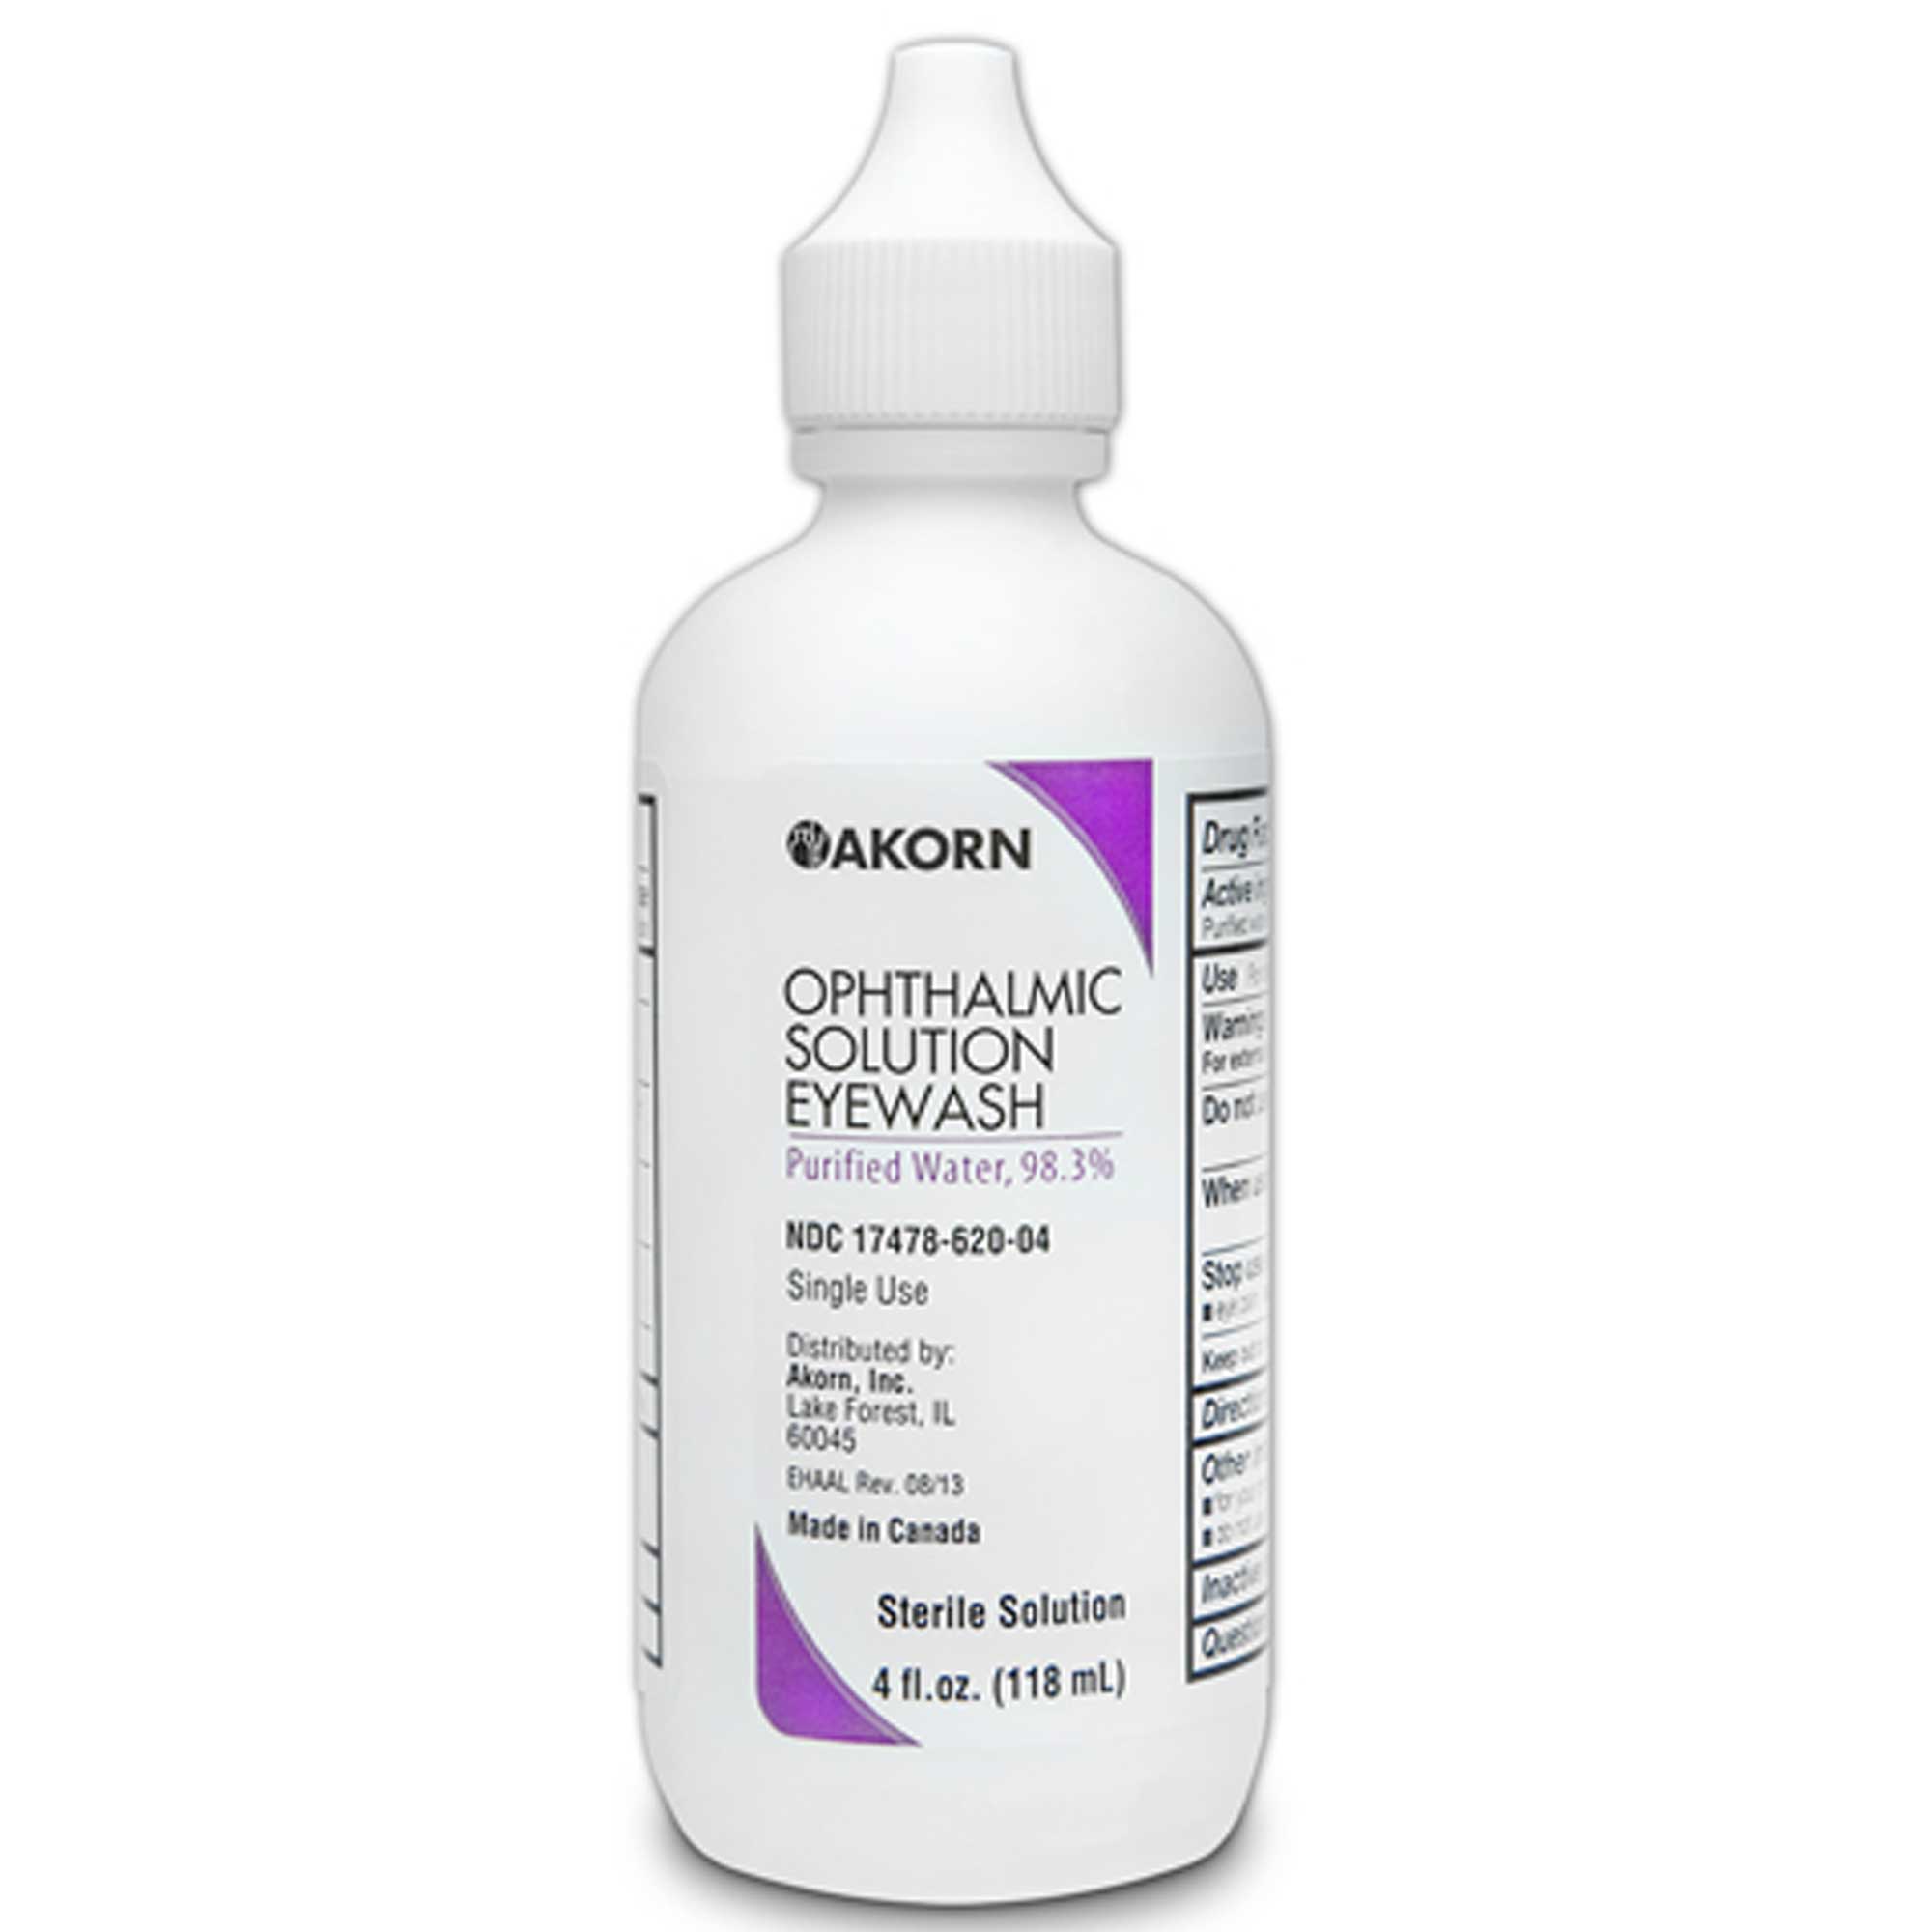 Ophthalmic Solution Eyewash Usage